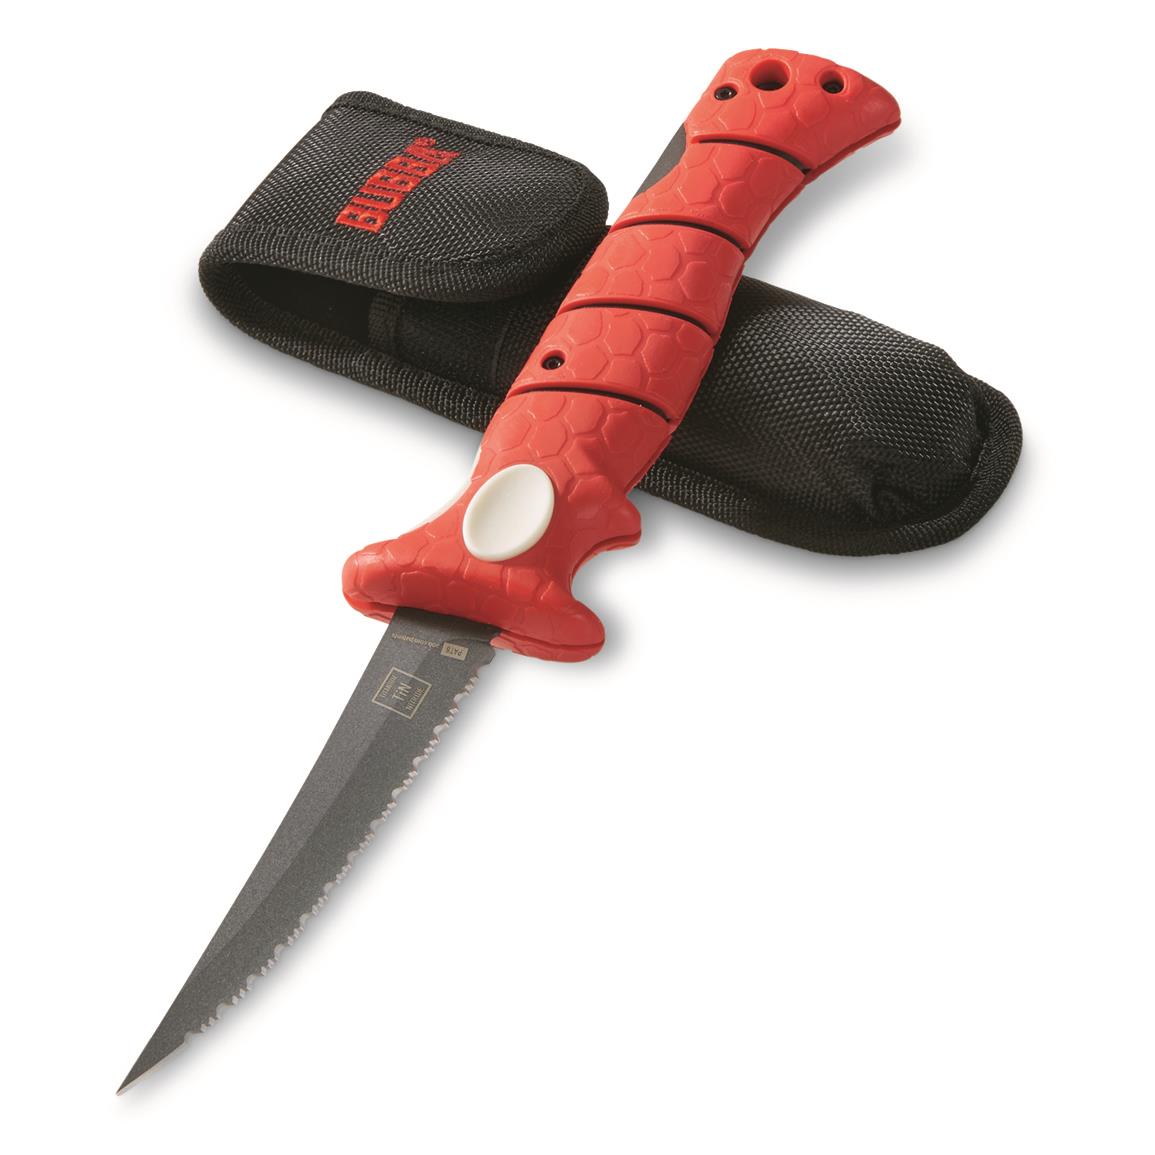 Bubba Blade 7 Tapered Flex Fillet Knife - 643364, Fillet Knives at  Sportsman's Guide